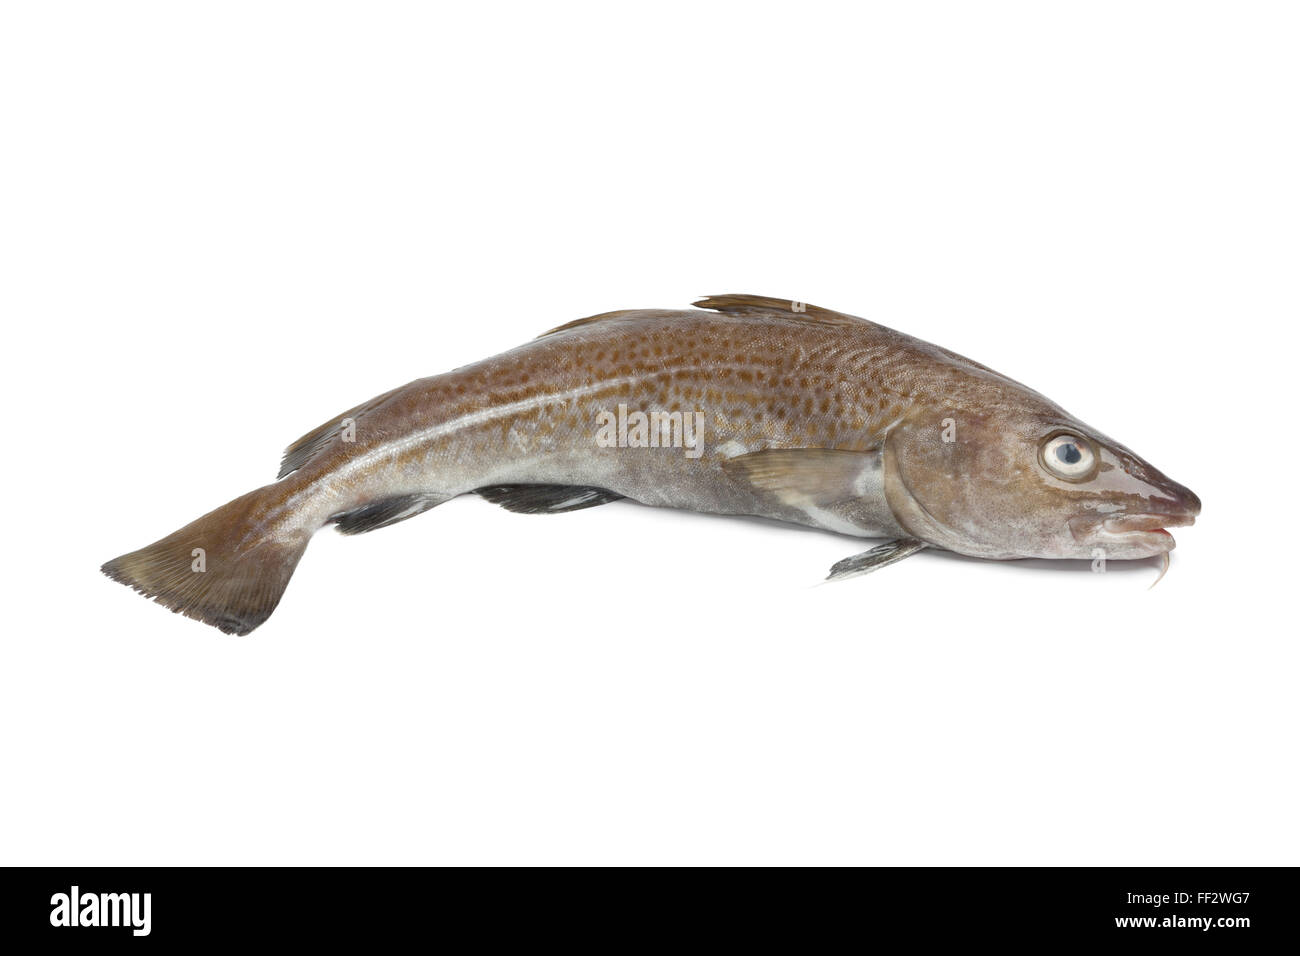 Single fresh atlantic cod fish on white background Stock Photo